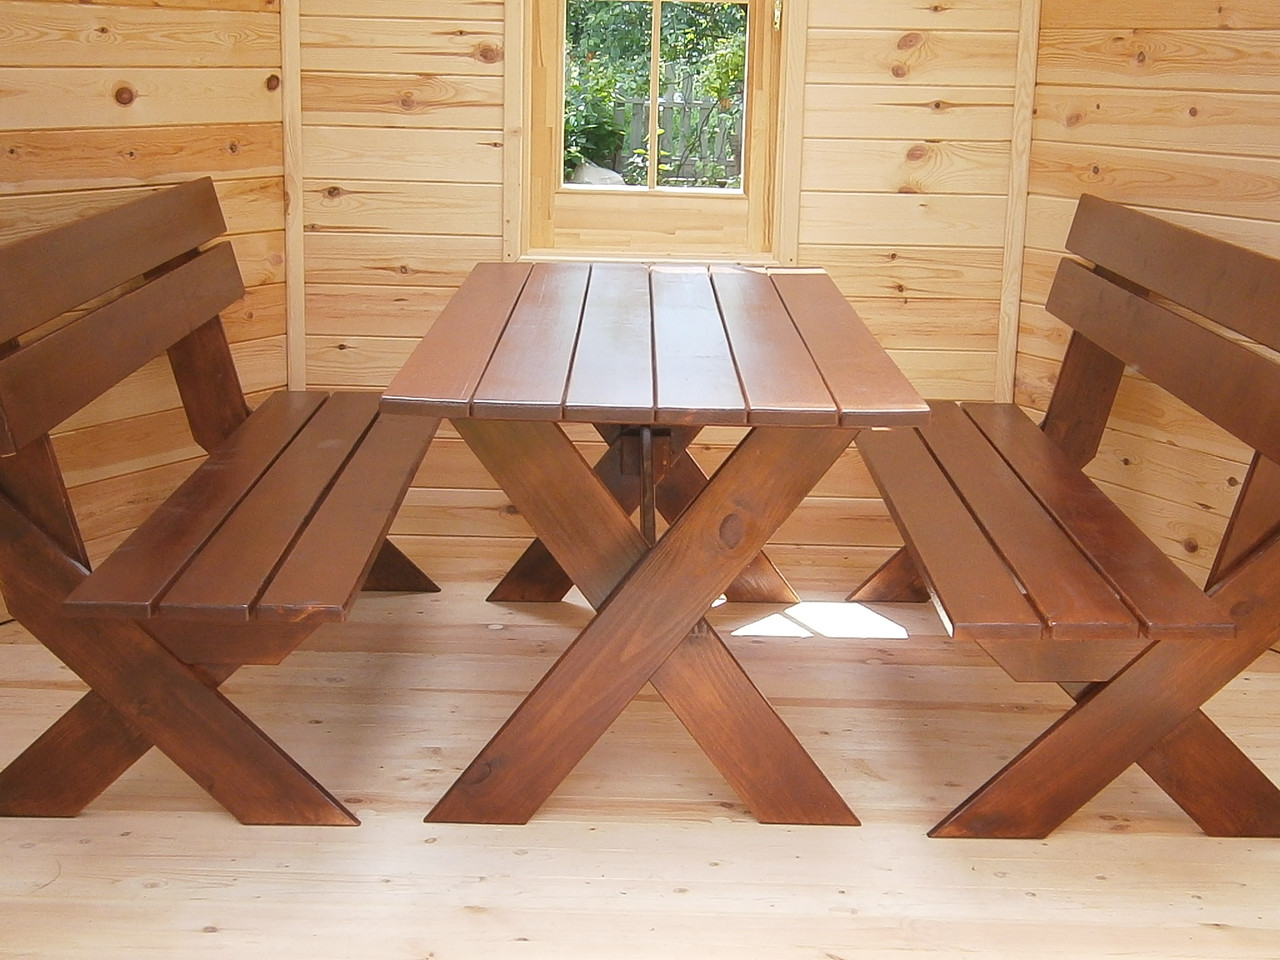  мебели садовой деревянной (стол и две скамейки)